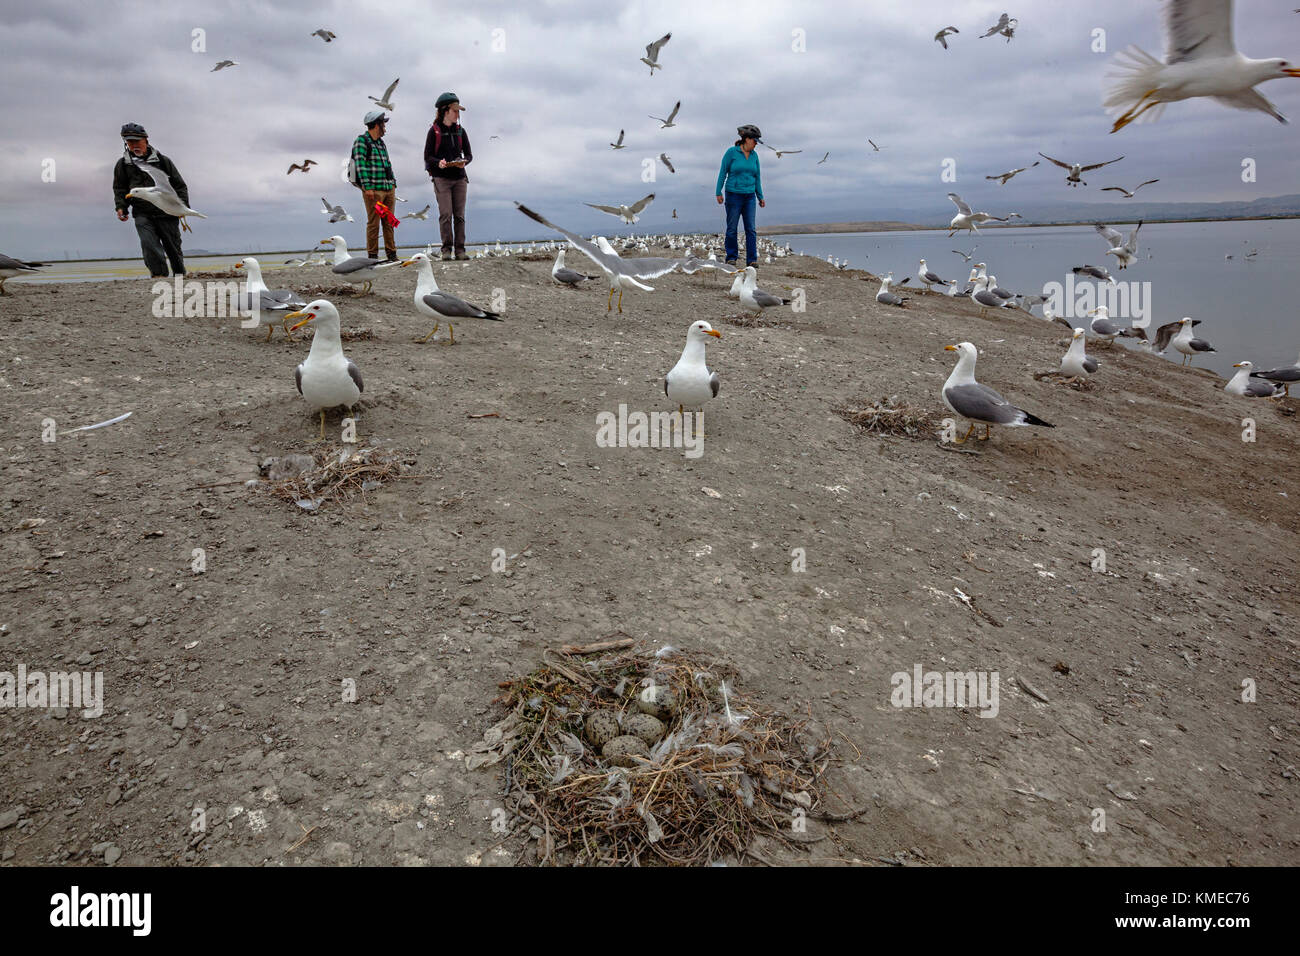 Les membres de l'Observatoire d'oiseaux de la baie de San Francisco en Californie du Sud enquête Gull Bay, près de restauration Aviso, California, USA Banque D'Images